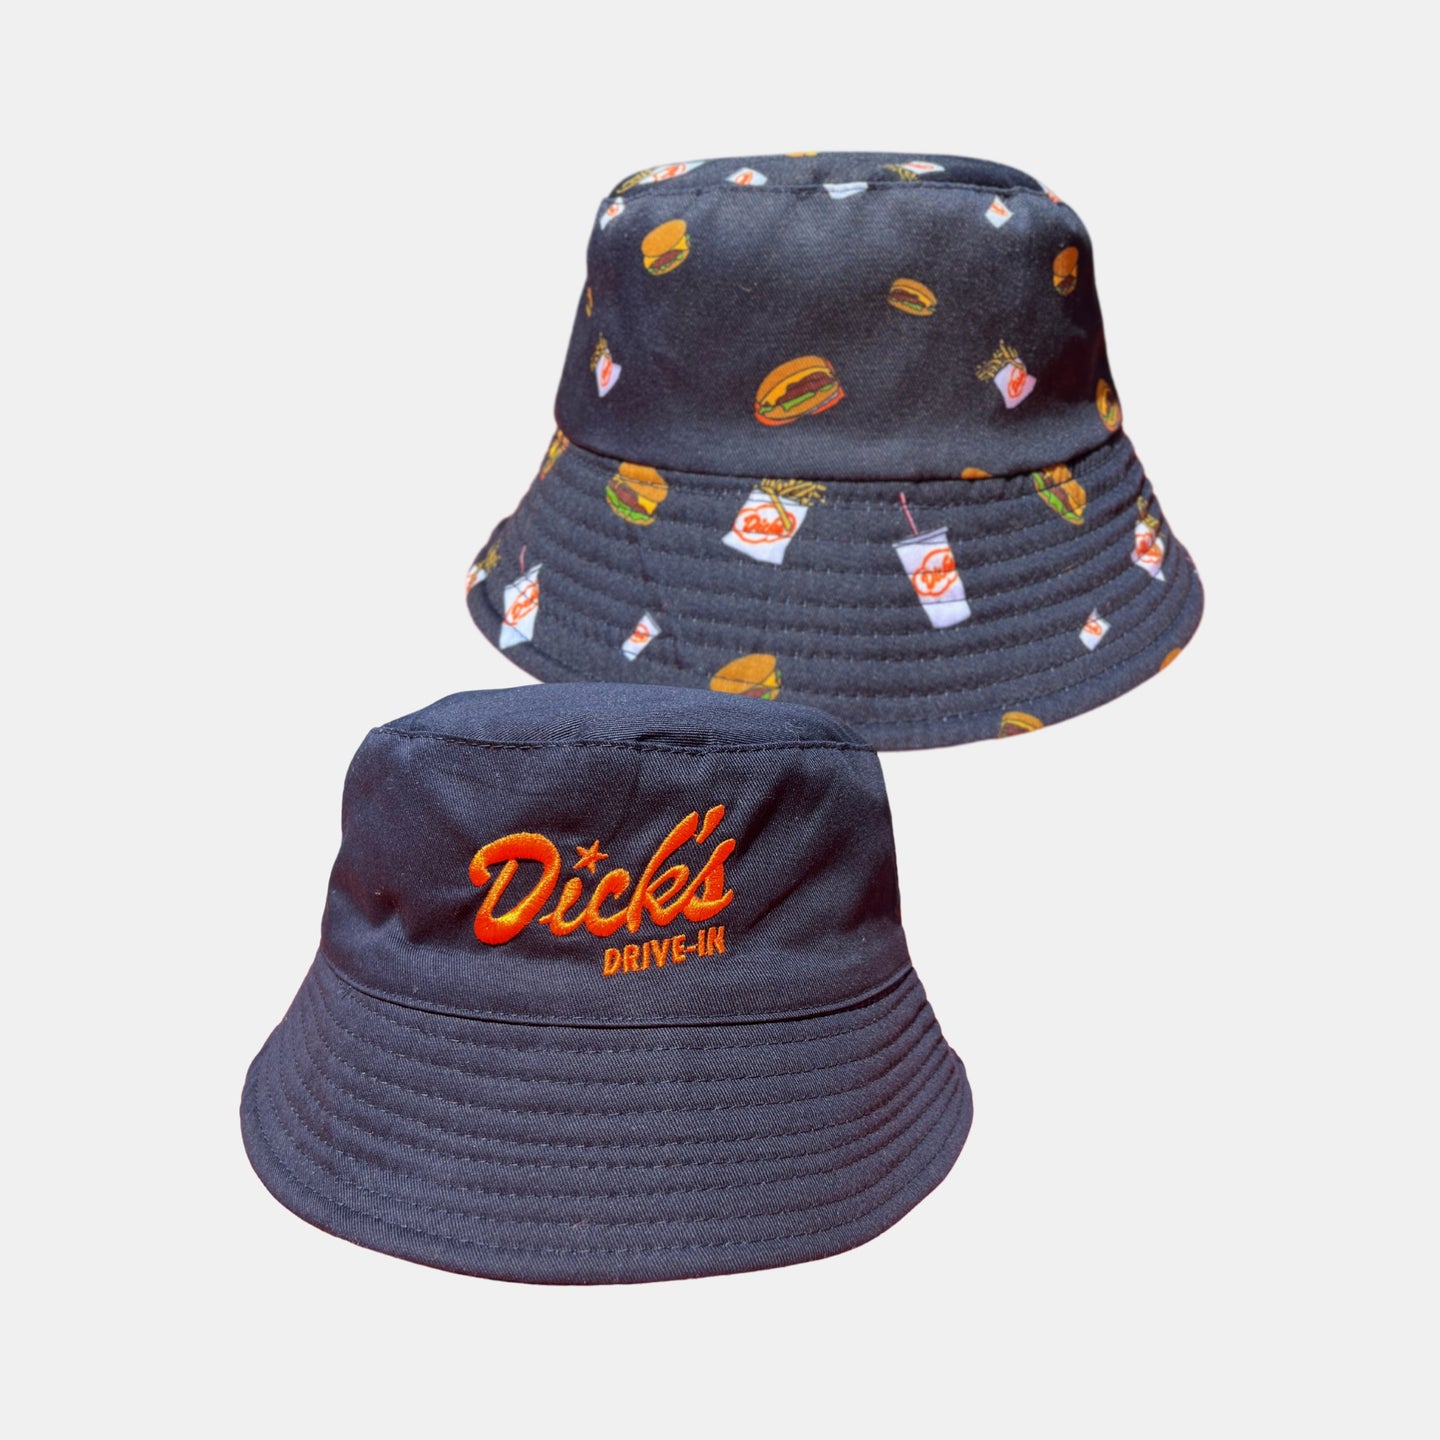 Deluxe Reversible Bucket Hat